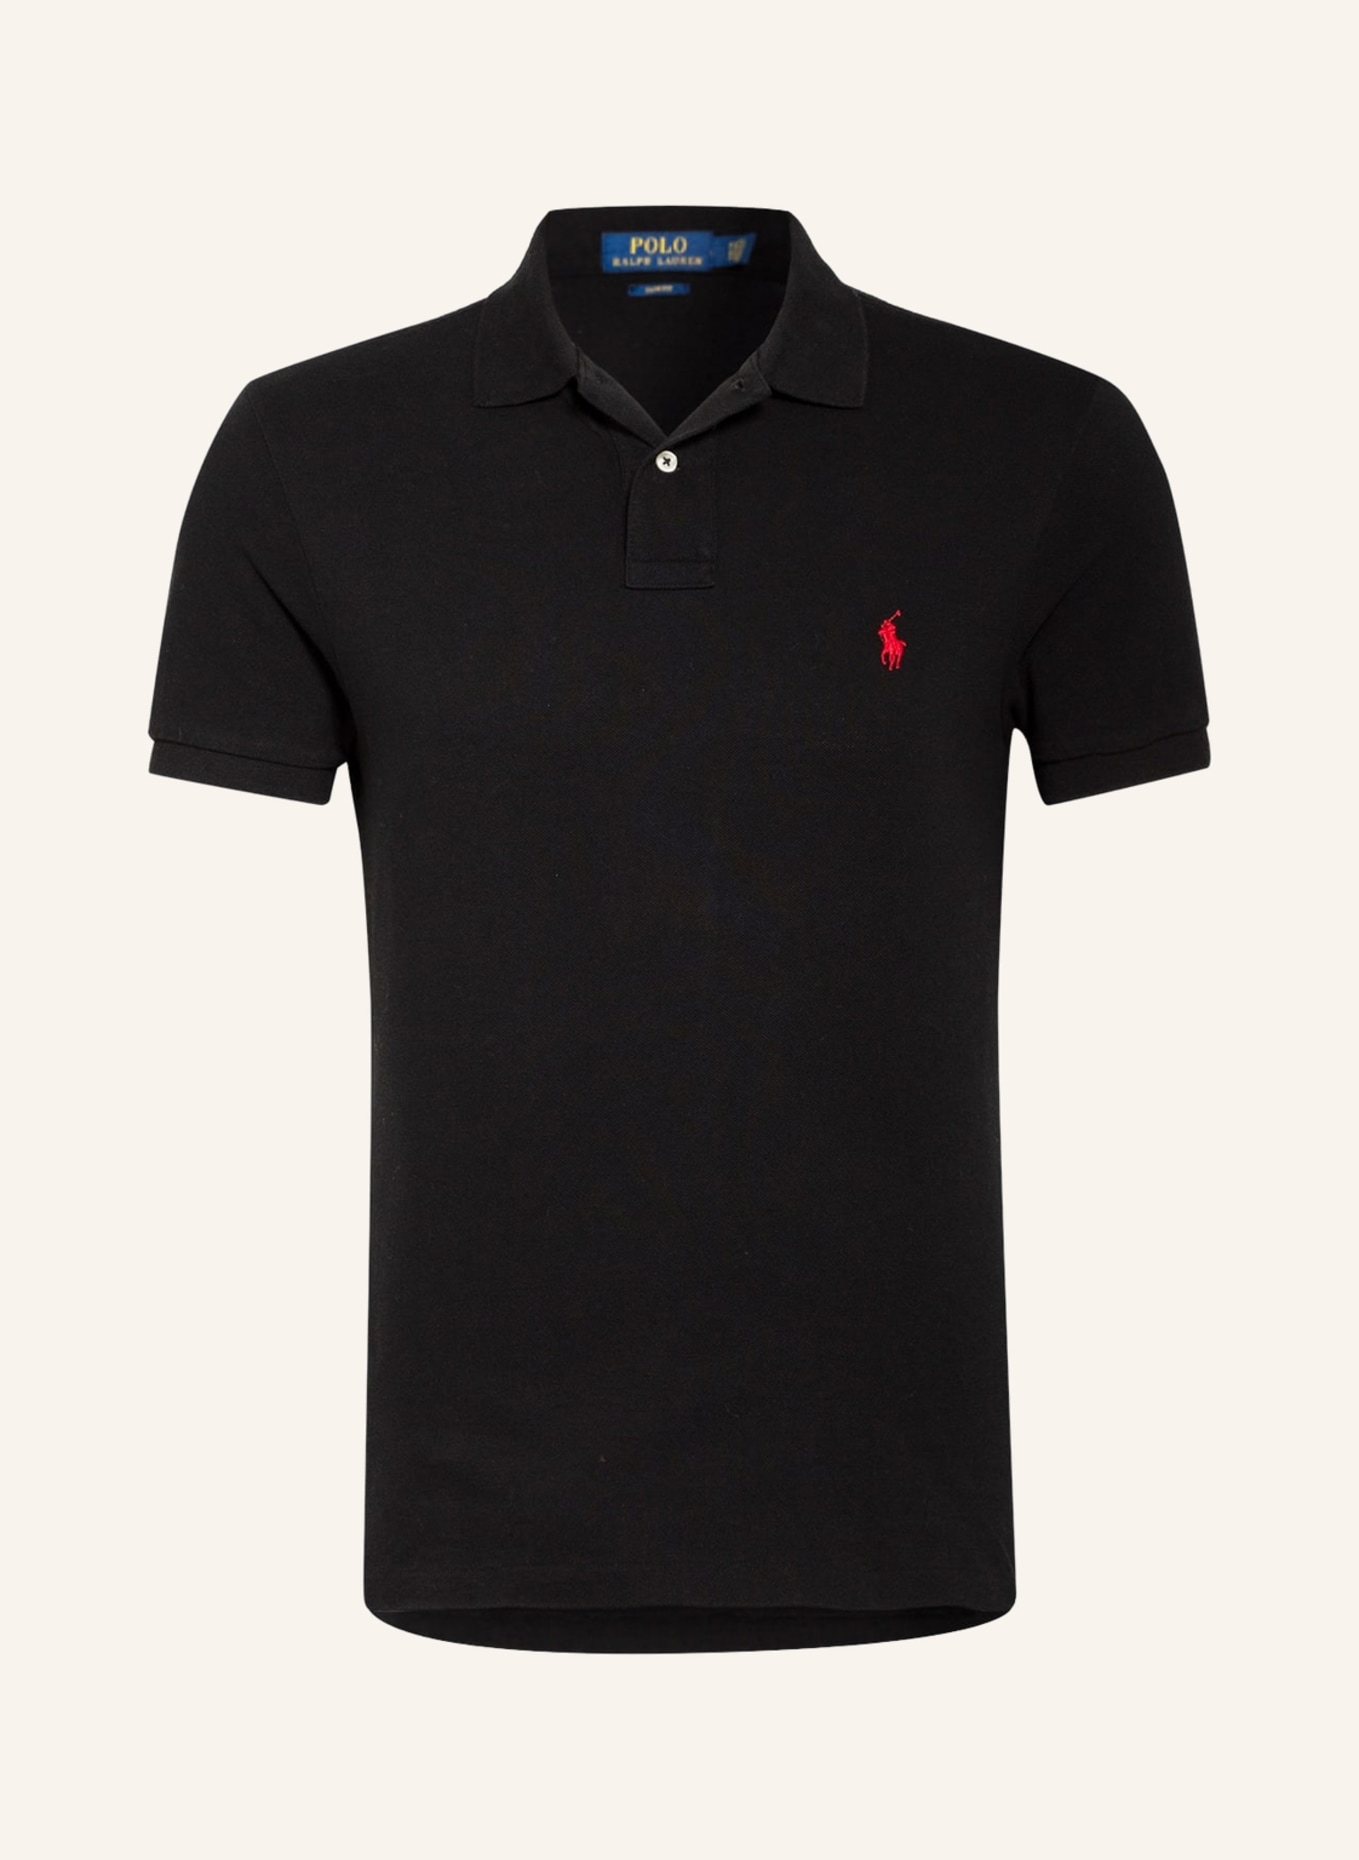 POLO RALPH LAUREN Piqué polo shirt slim fit, Color: BLACK (Image 1)